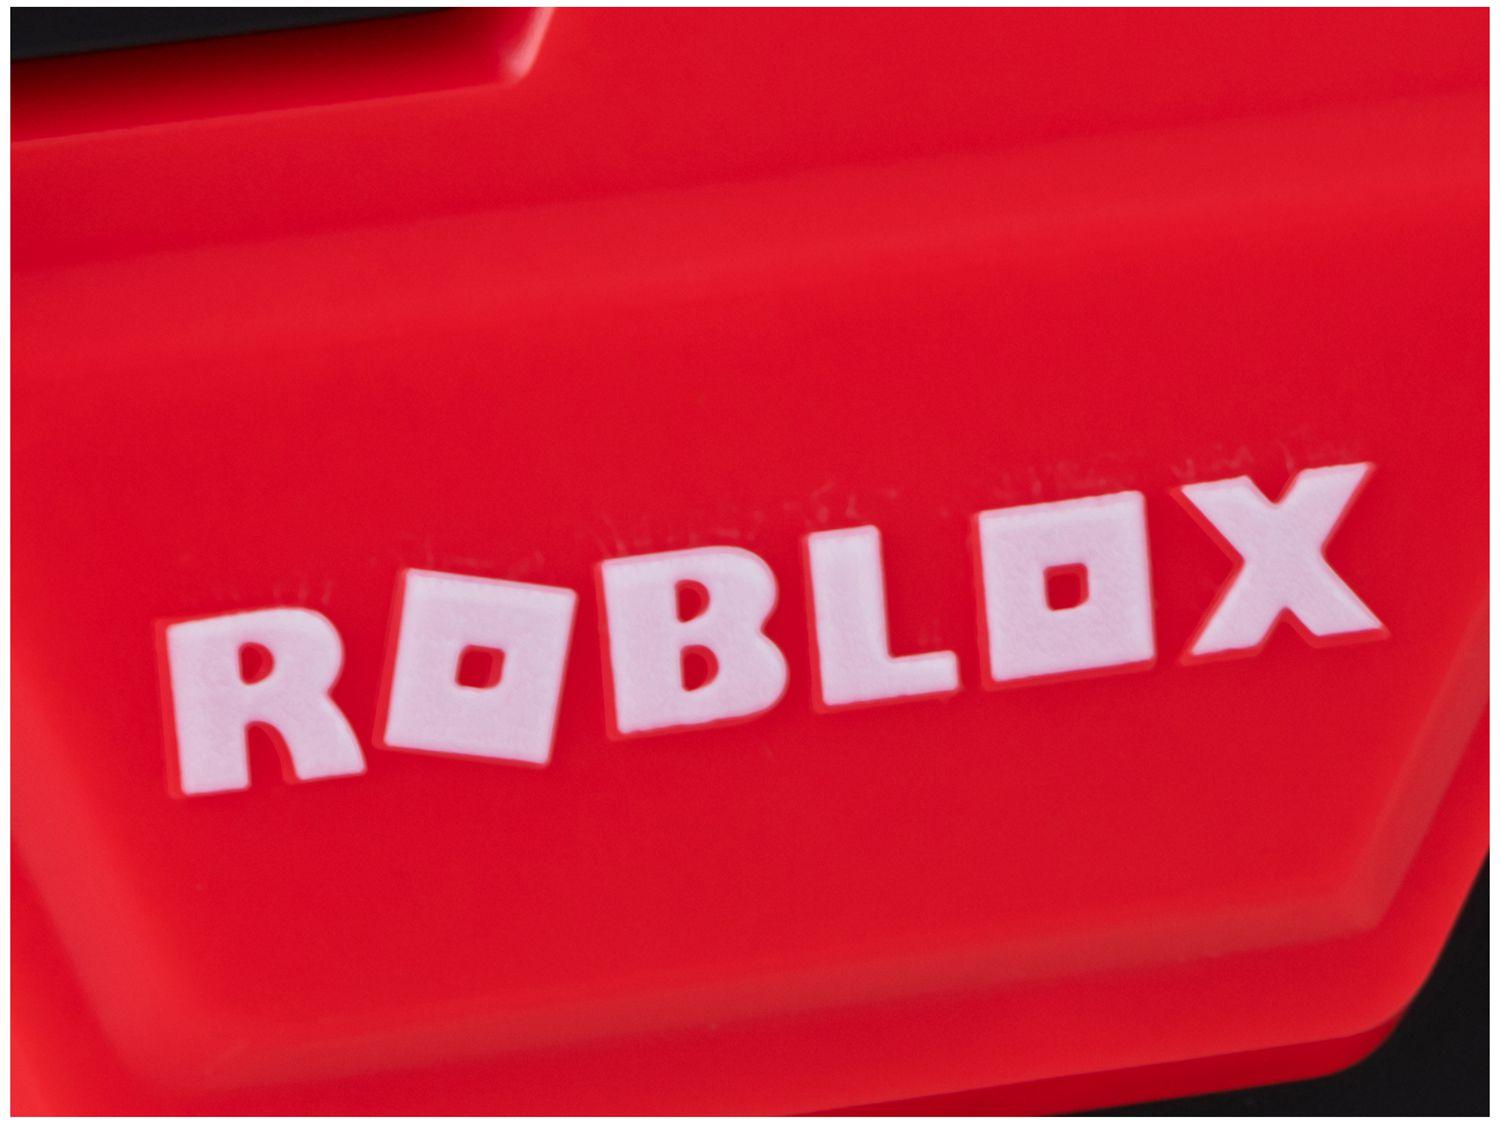 Lançador de Dardos Roblox Nerf MM2 Shark Seeker - Hasbro 5 Peças, Shopping